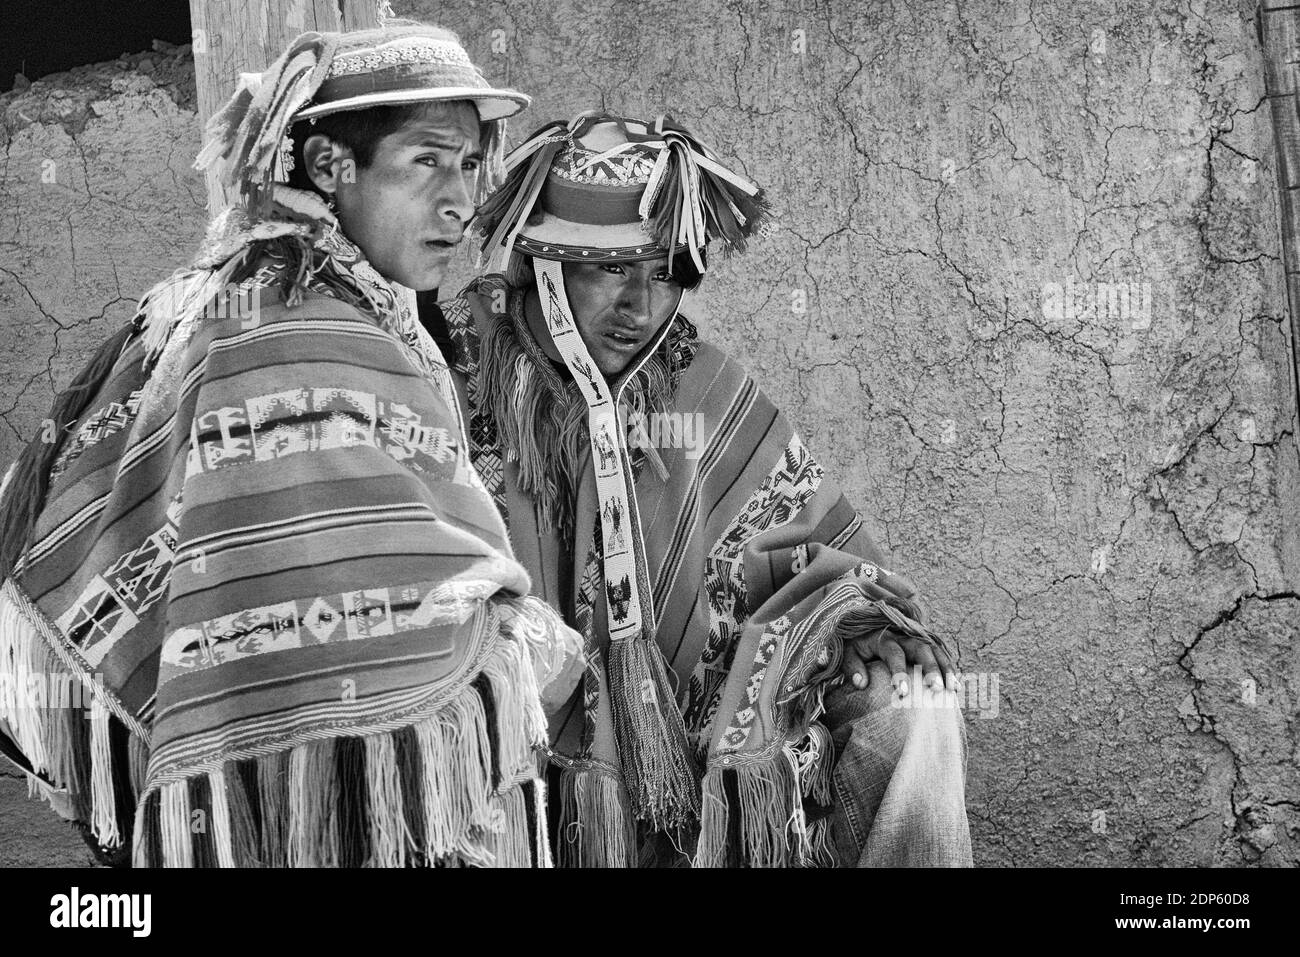 Patachancha, Cuzco, Perù - 21 ottobre 2012: Primo piano di due uomini peruviani indigeni vestiti con abiti tradizionali Foto Stock